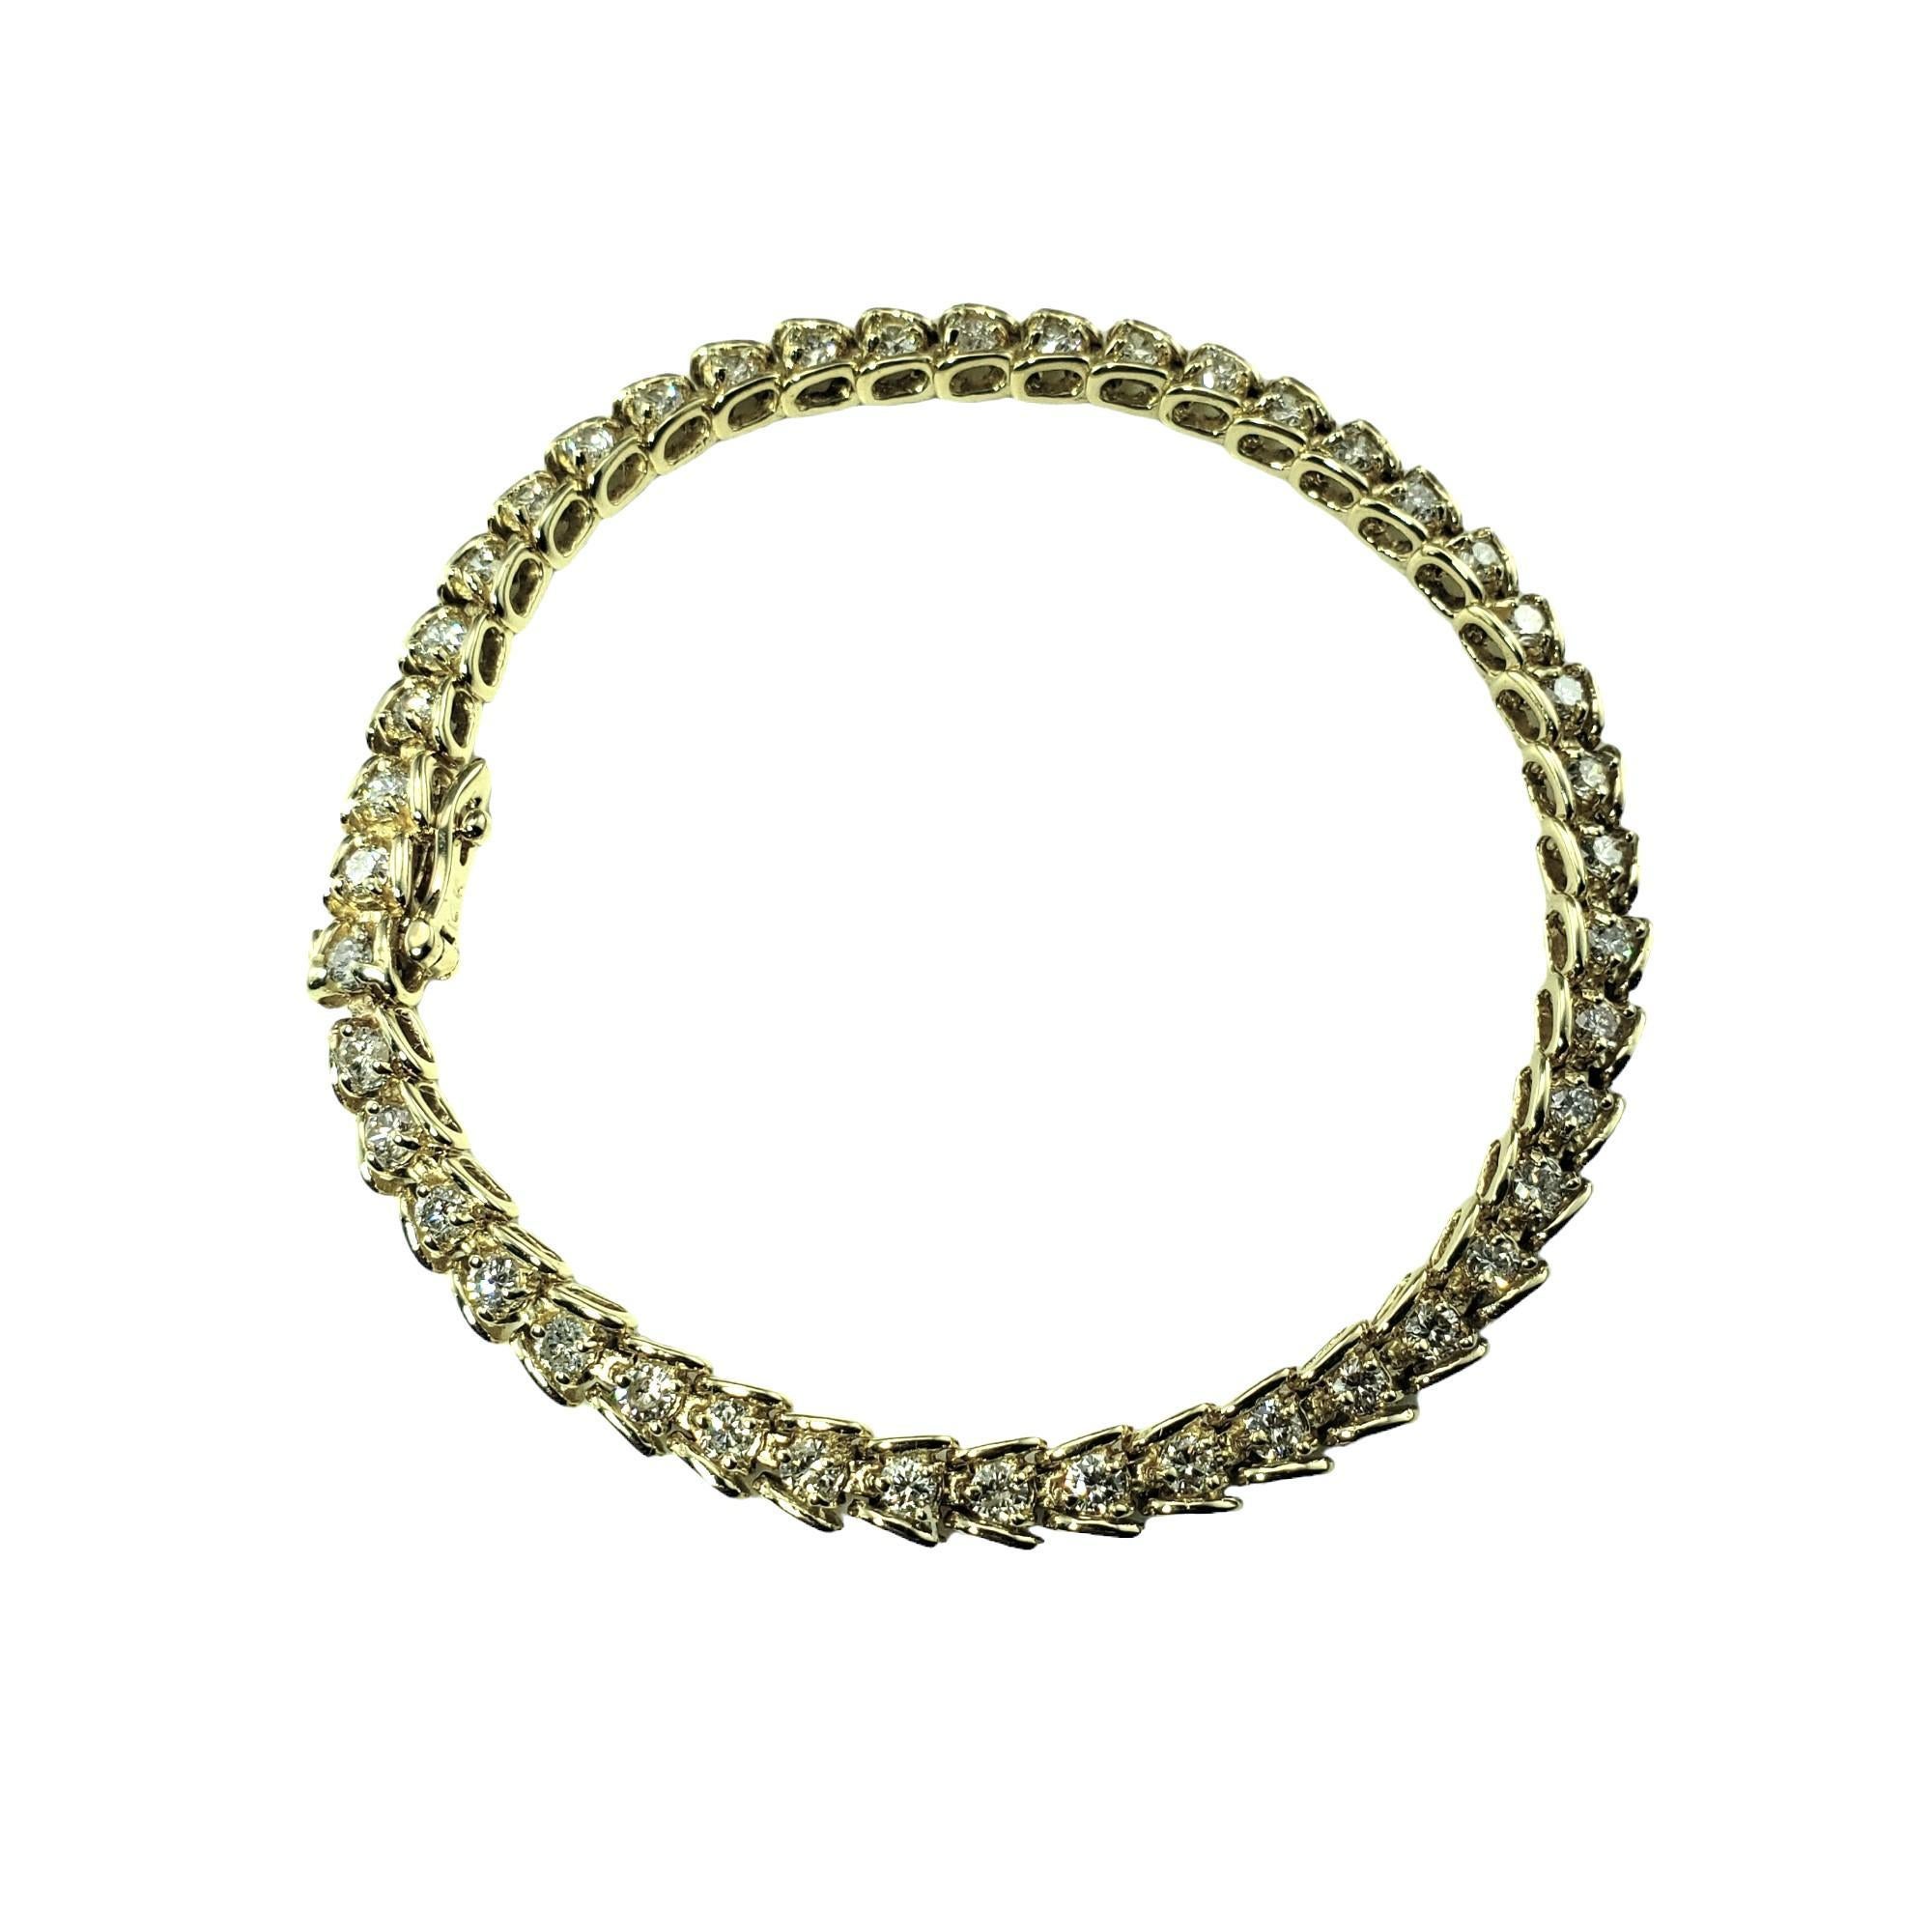 Vintage 14 Karat Gelbgold Diamant Tennisarmband-

Dieses funkelnde Armband besteht aus 44 runden Diamanten im Brillantschliff (Breite: 5 mm), die in wunderschönes 14-karätiges Gelbgold gefasst sind. 

Ungefähres Gesamtgewicht der Diamanten: 2.20